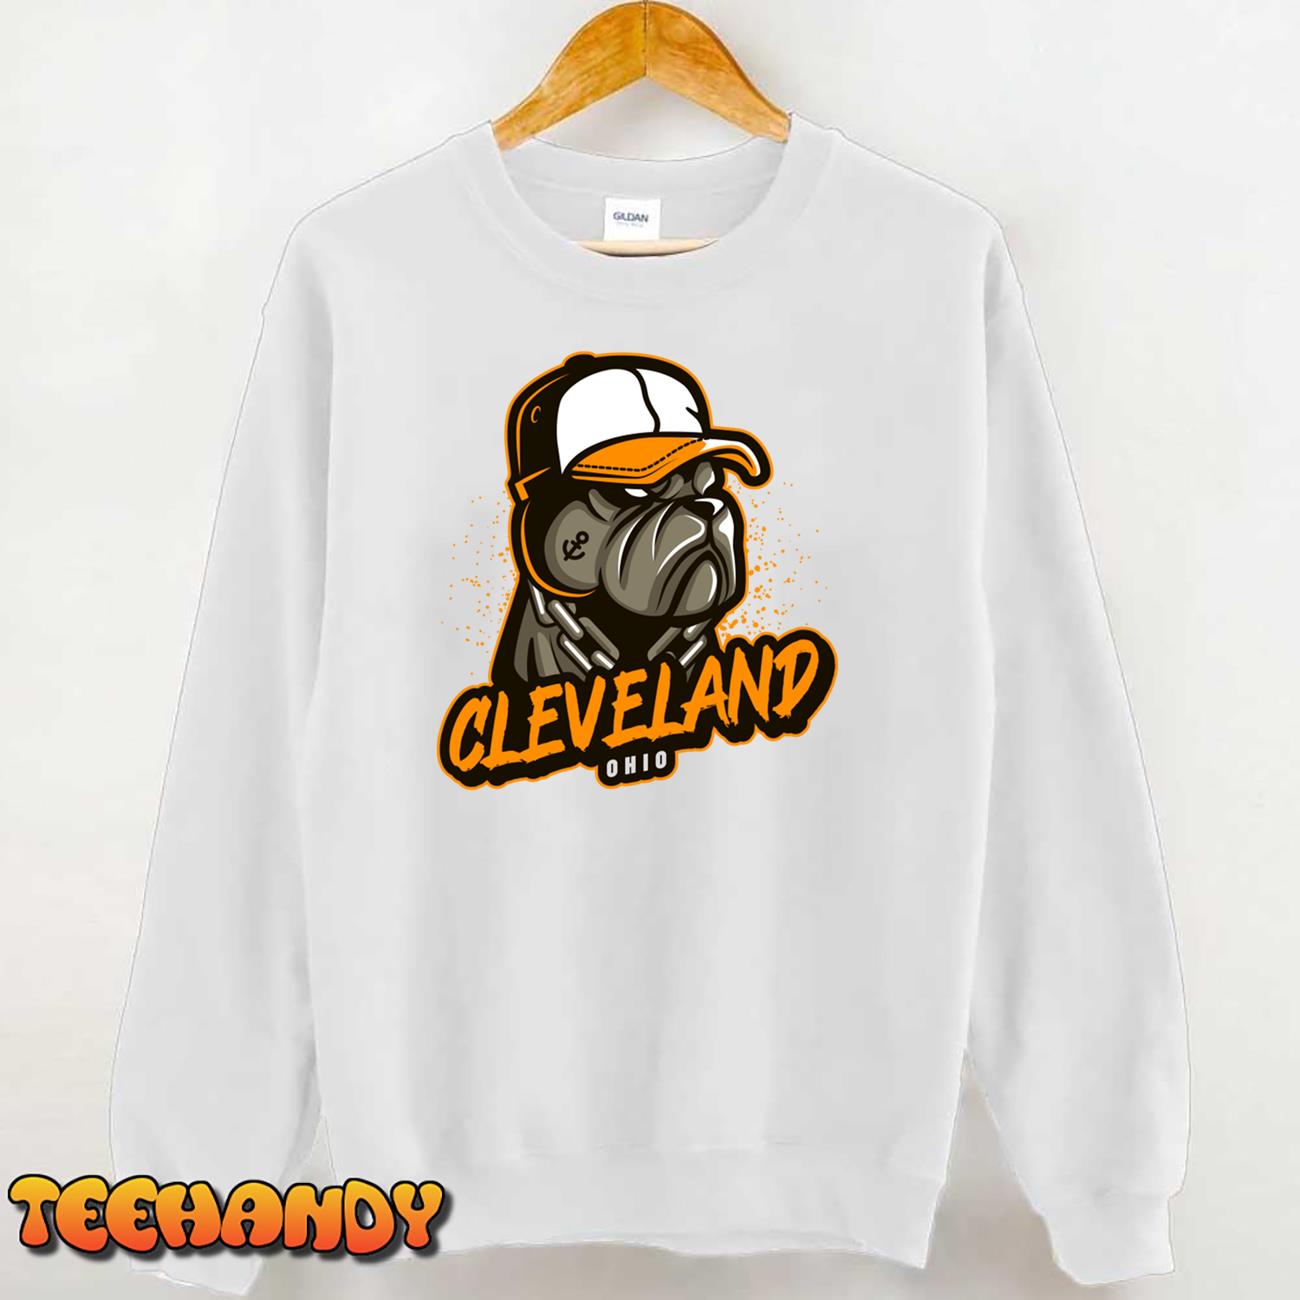 Cleveland Ohio 2.1 Unisex T-Shirt